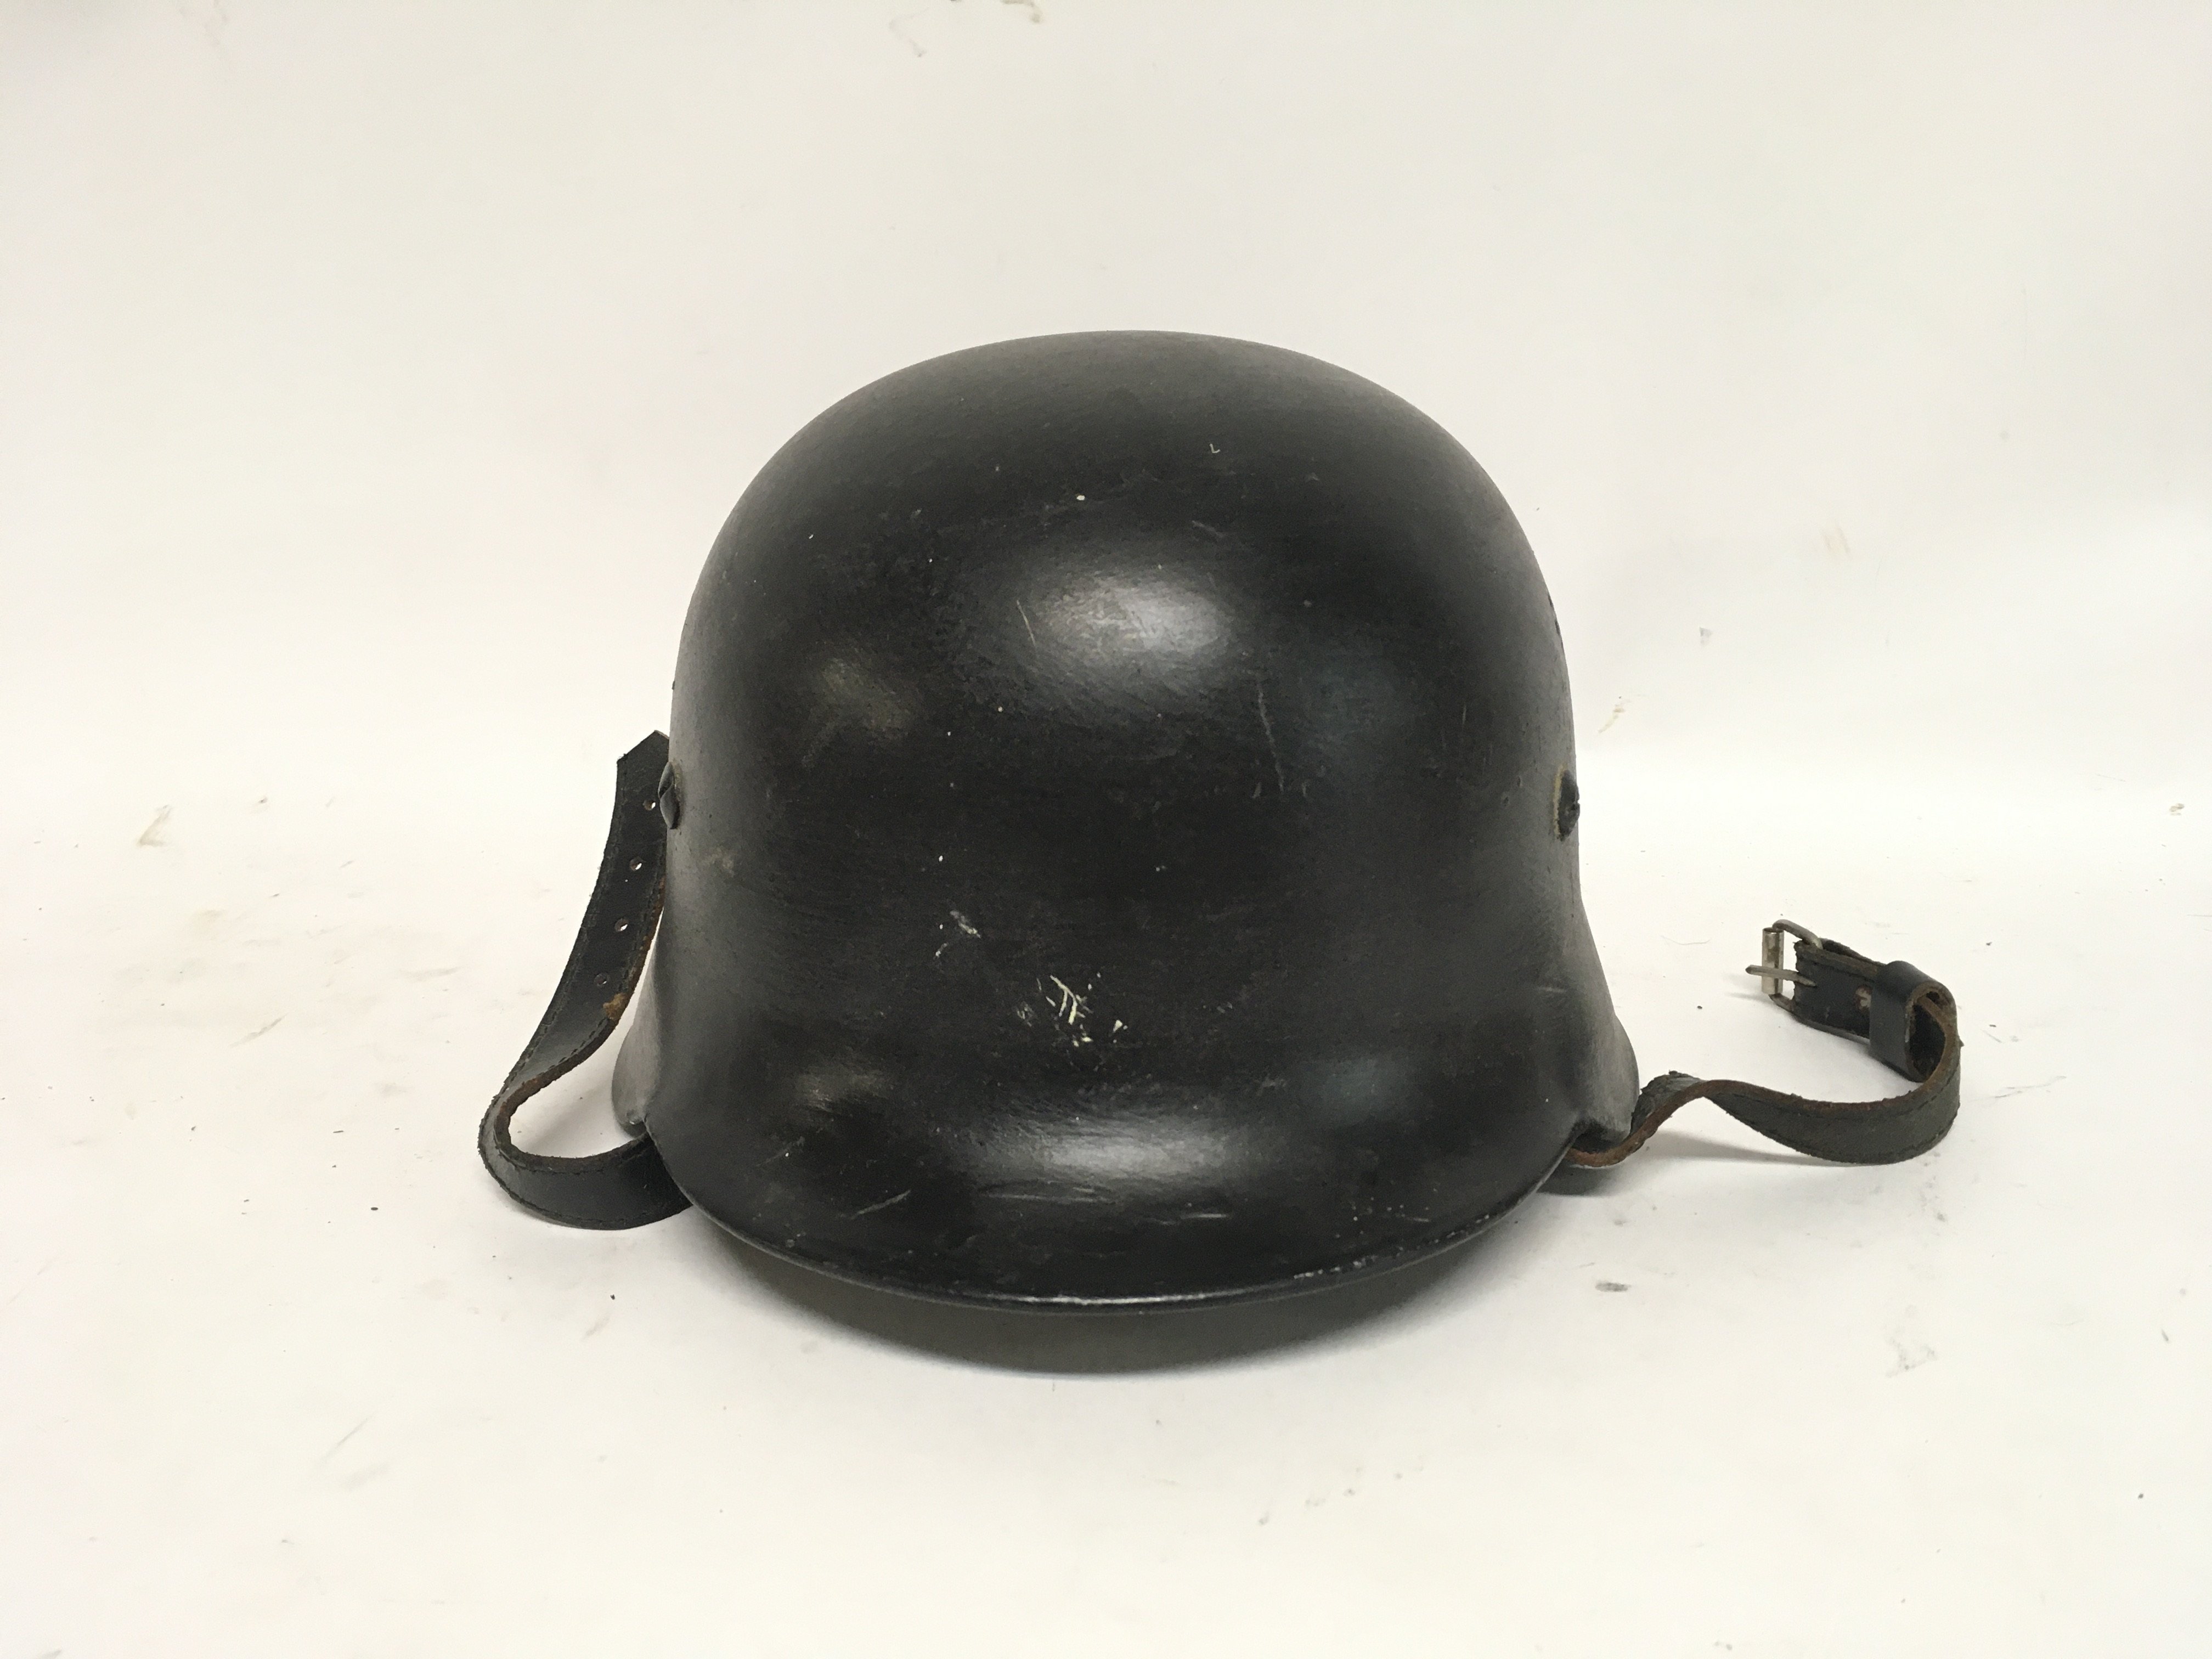 Film prop of SS reenactor helmet (Band of Brothers